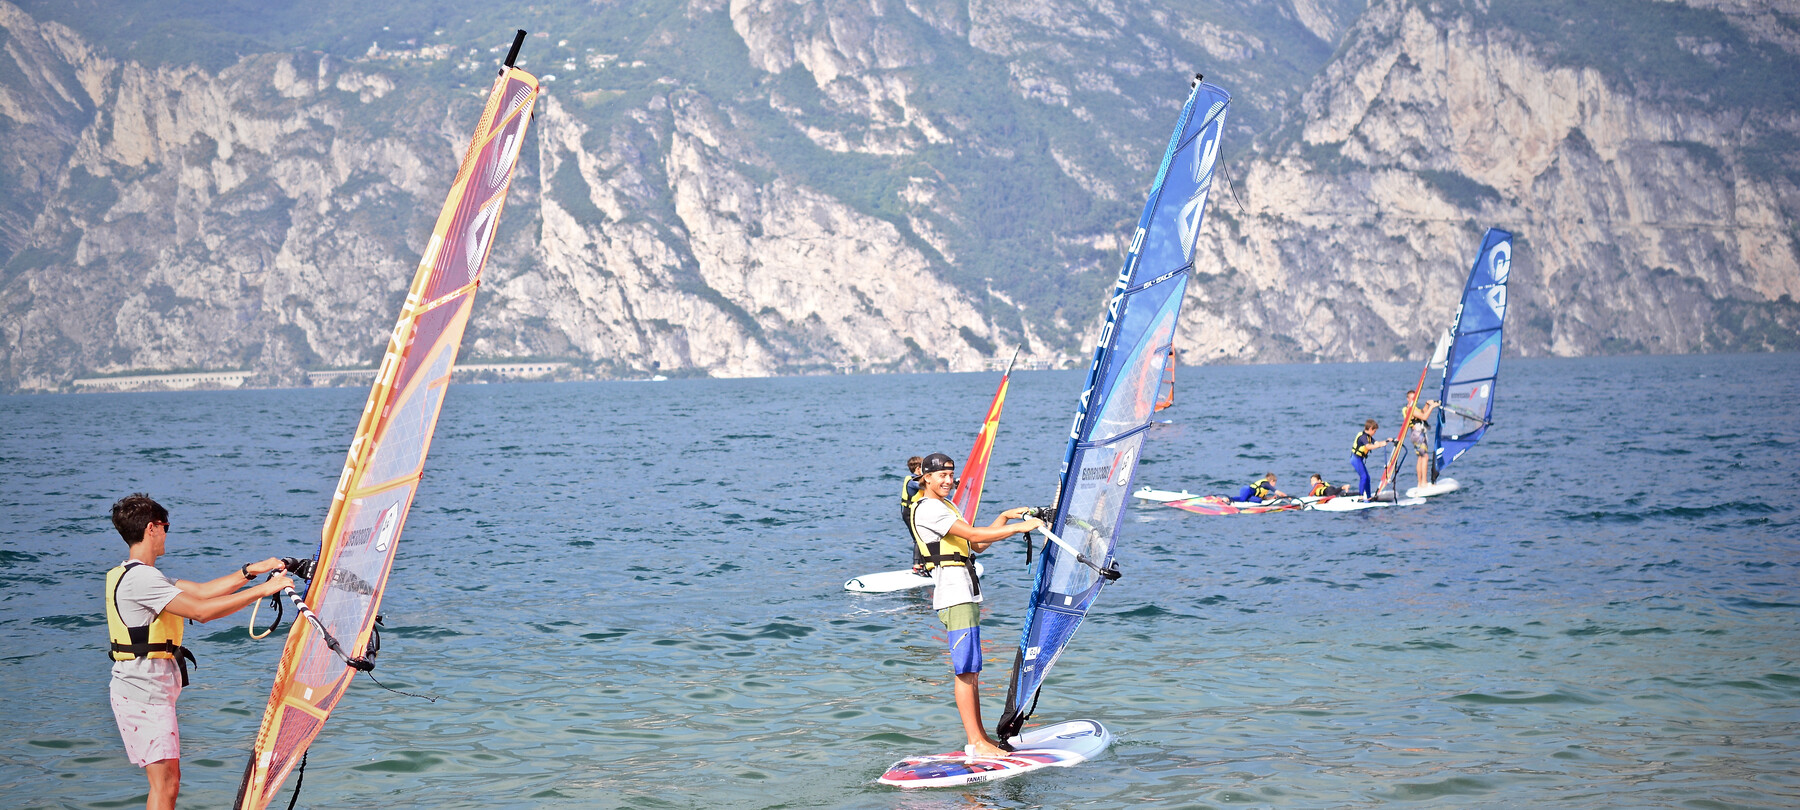 De meren van Trentino: het verhaal van Nicolò en windsurfen op het Gardameer